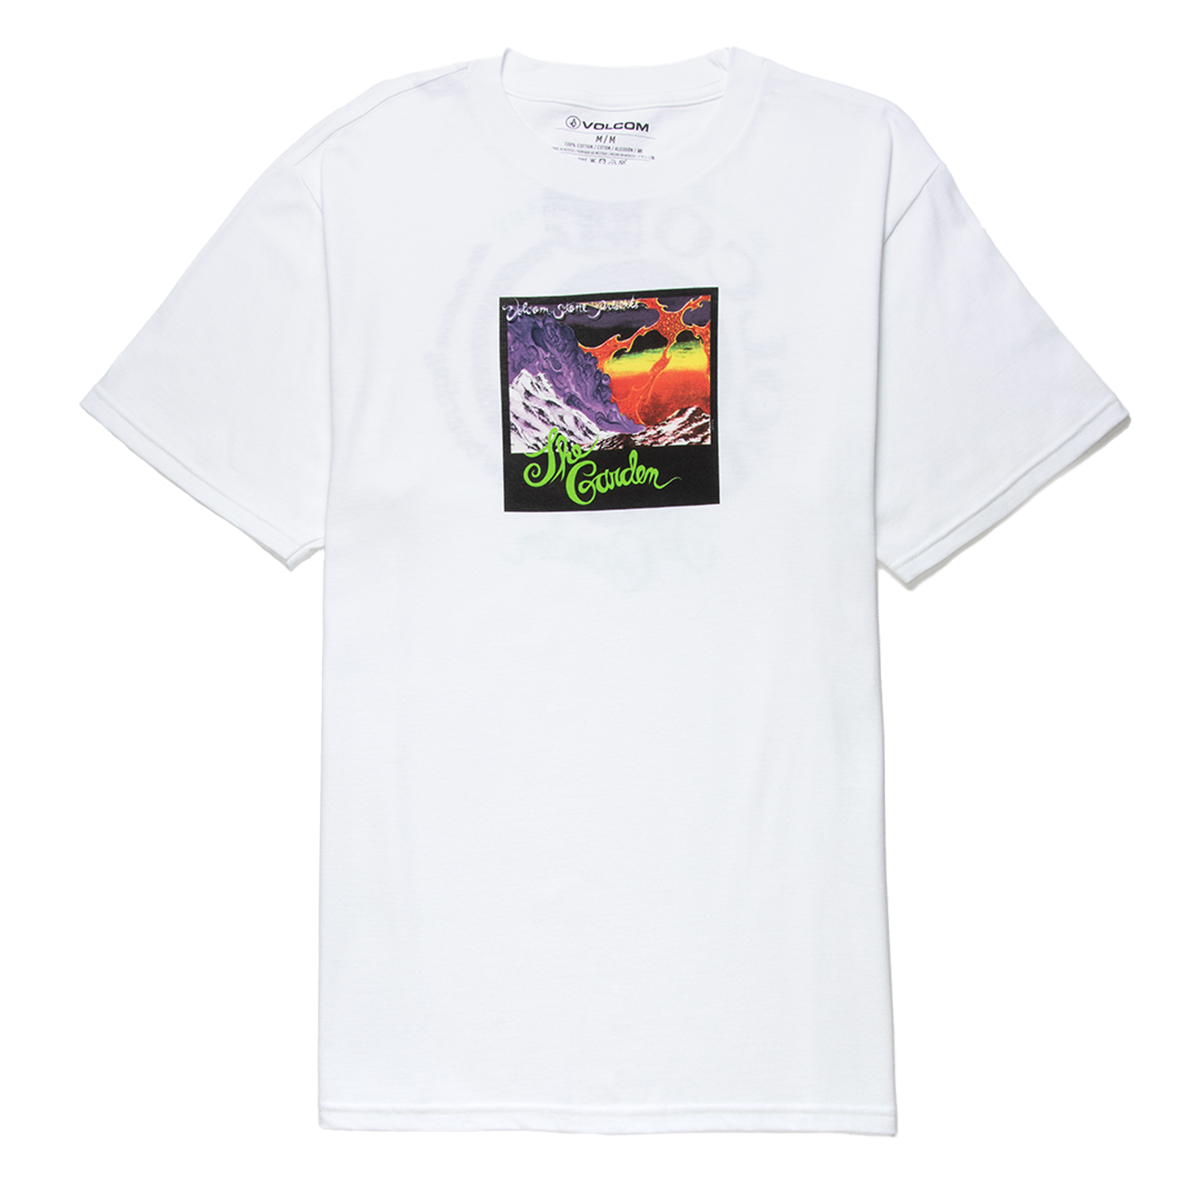 Volcom Entertainment The Garden T-Shirt - White